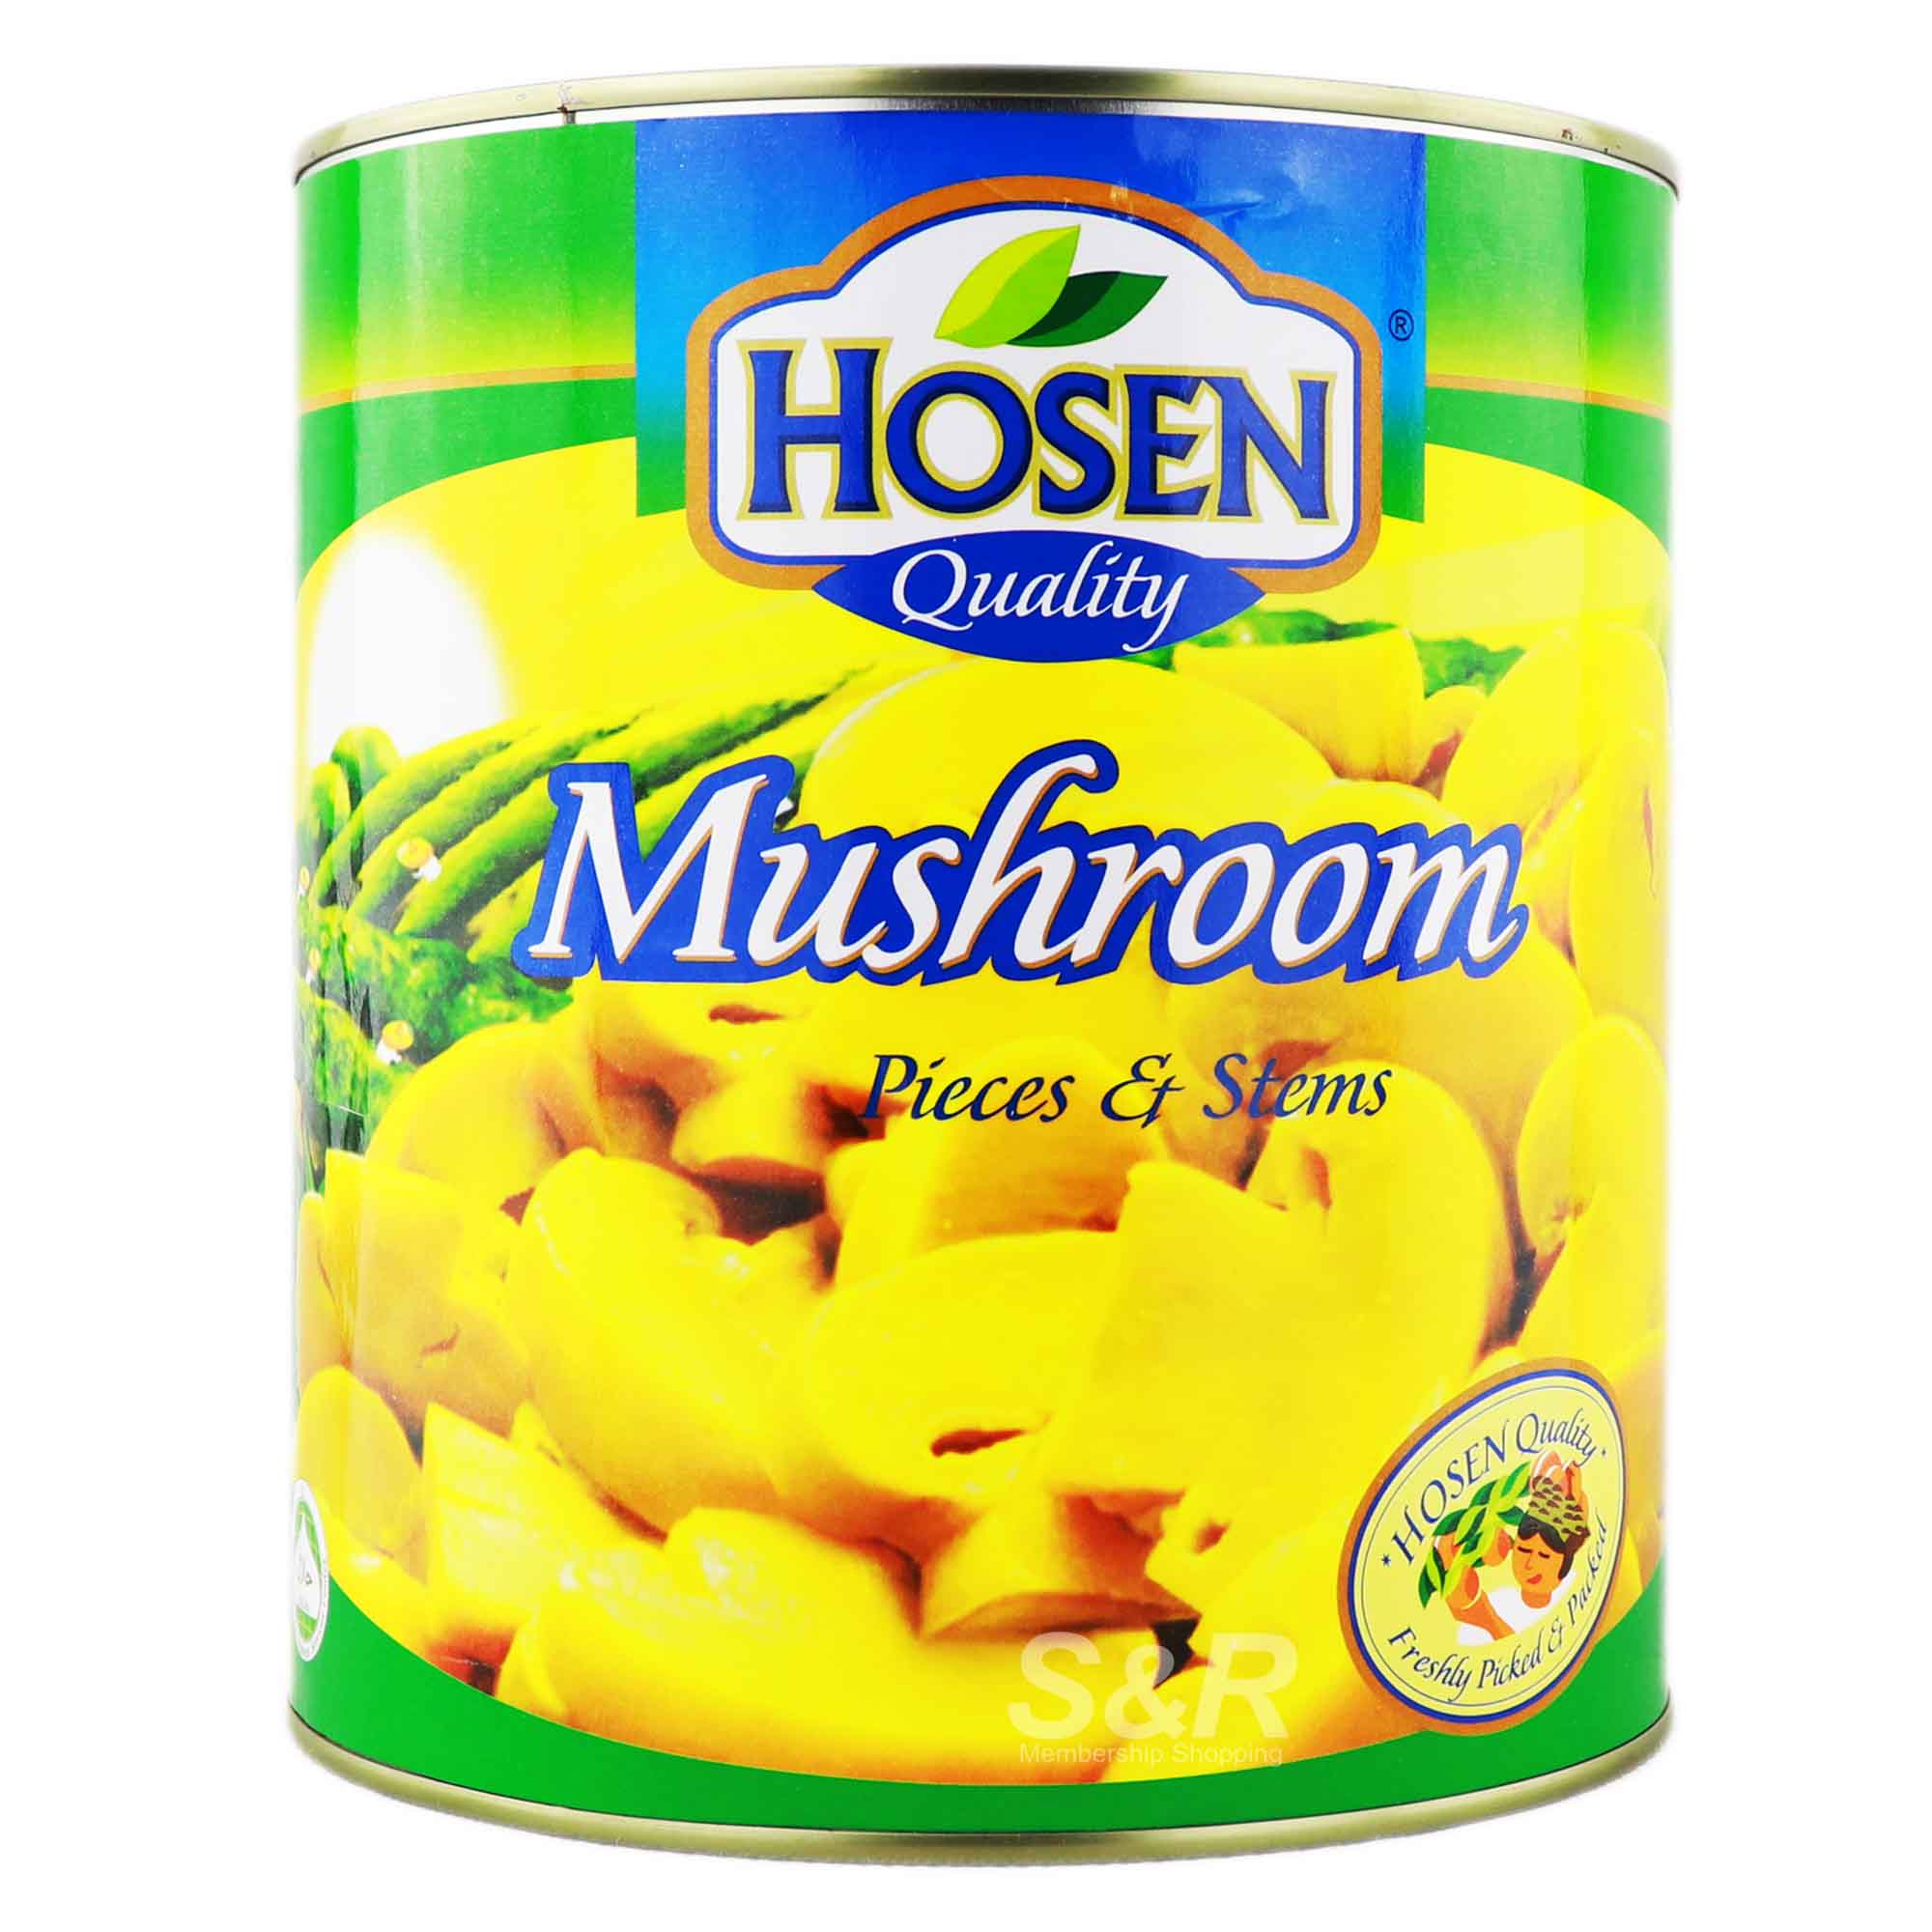 Hosen Quality Mushroom Pieces and Stems 2.84kg